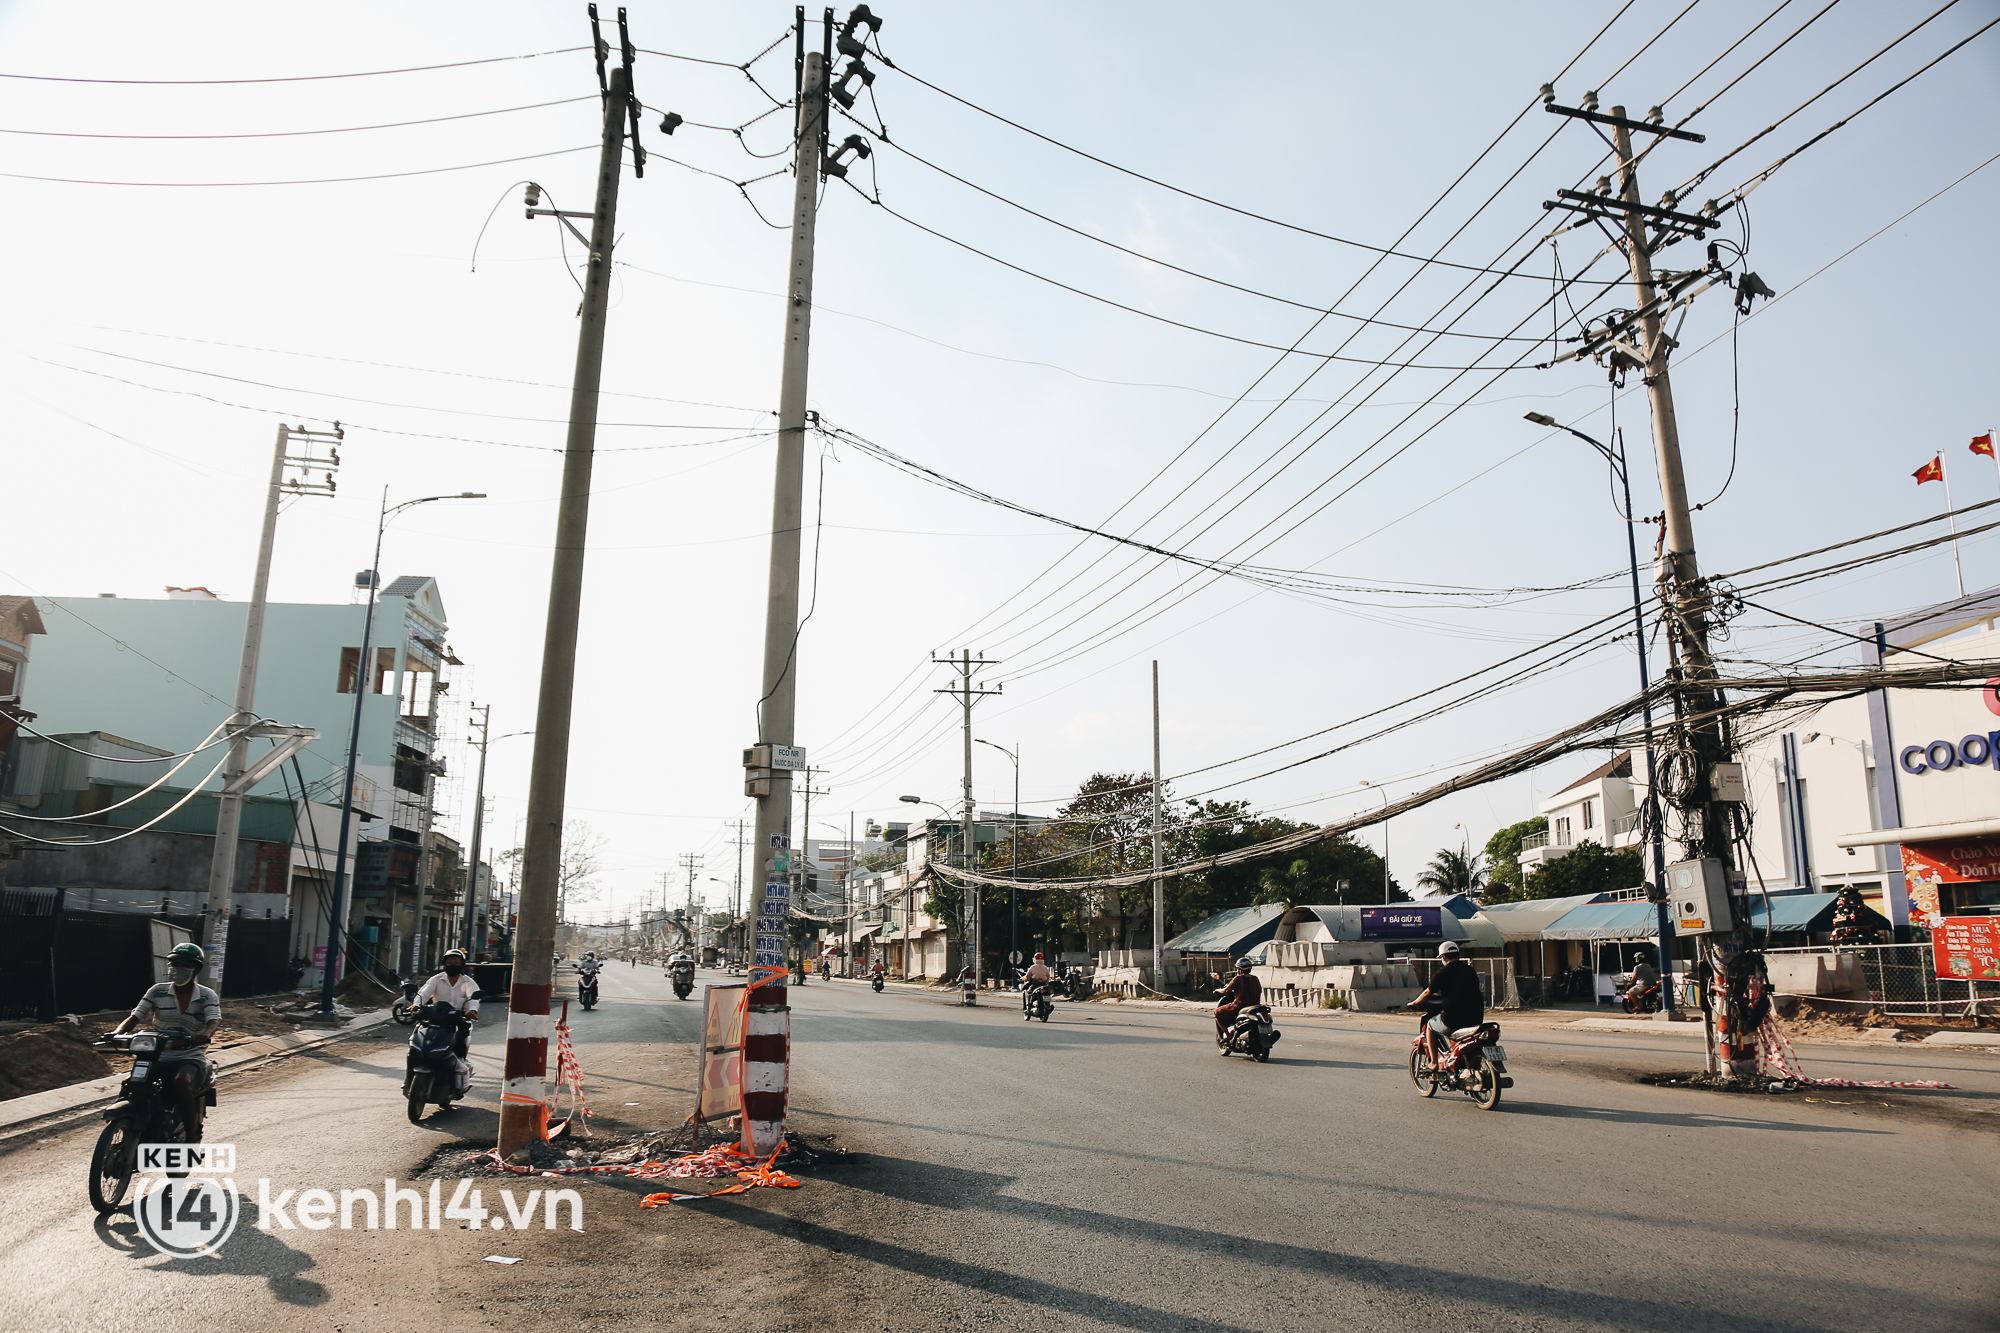 Hàng trăm cột điện bị bỏ quên giữa đường ở Sài Gòn, người dân nín thở luồn lách - Ảnh 10.